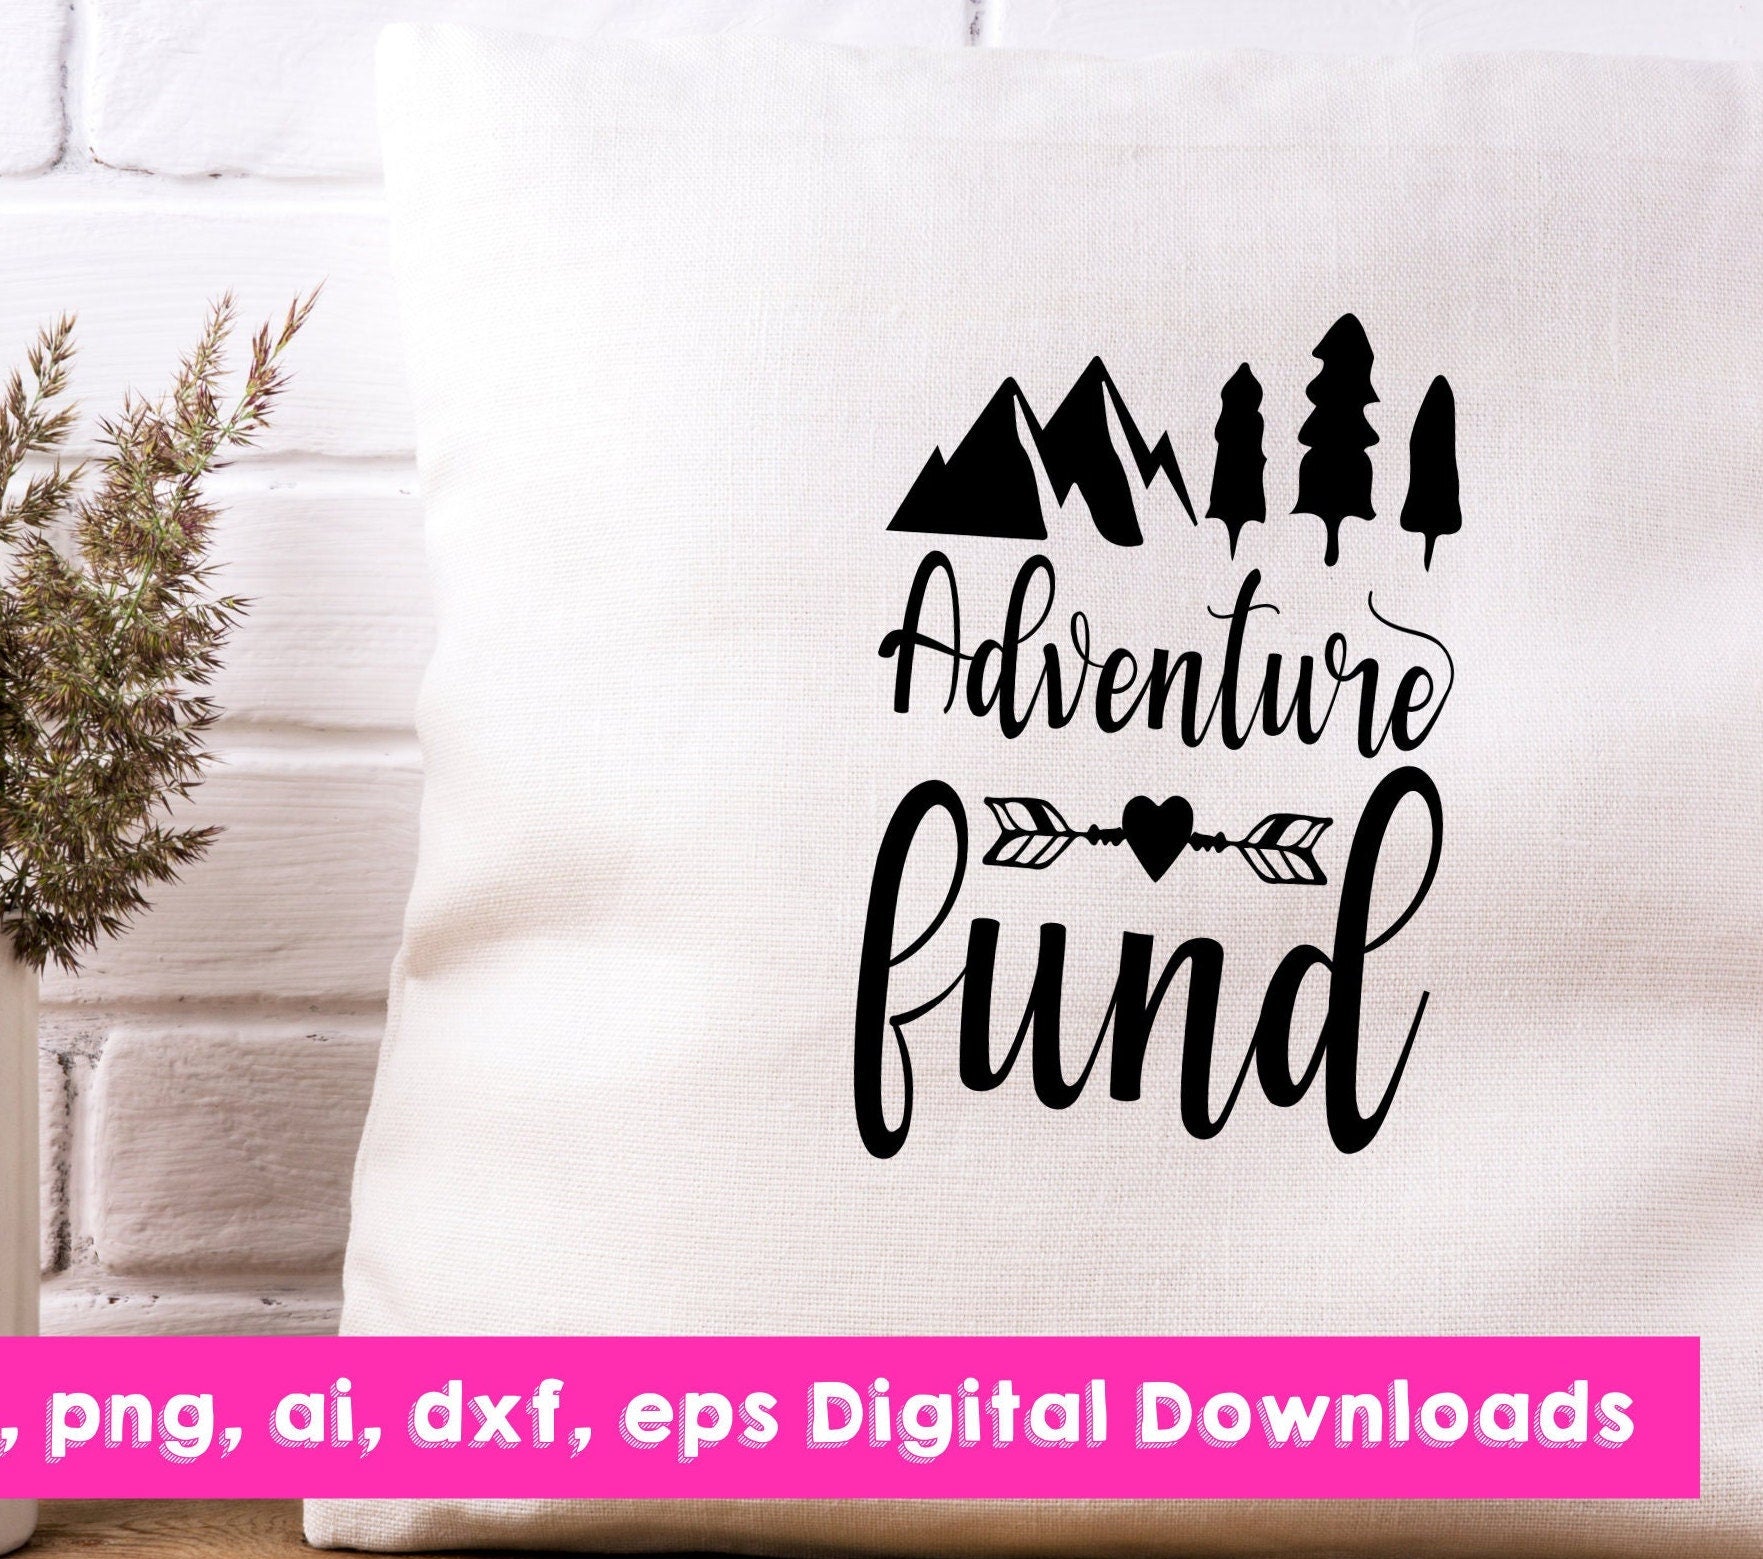 Adventure.Fund (@adventure_fund) / X